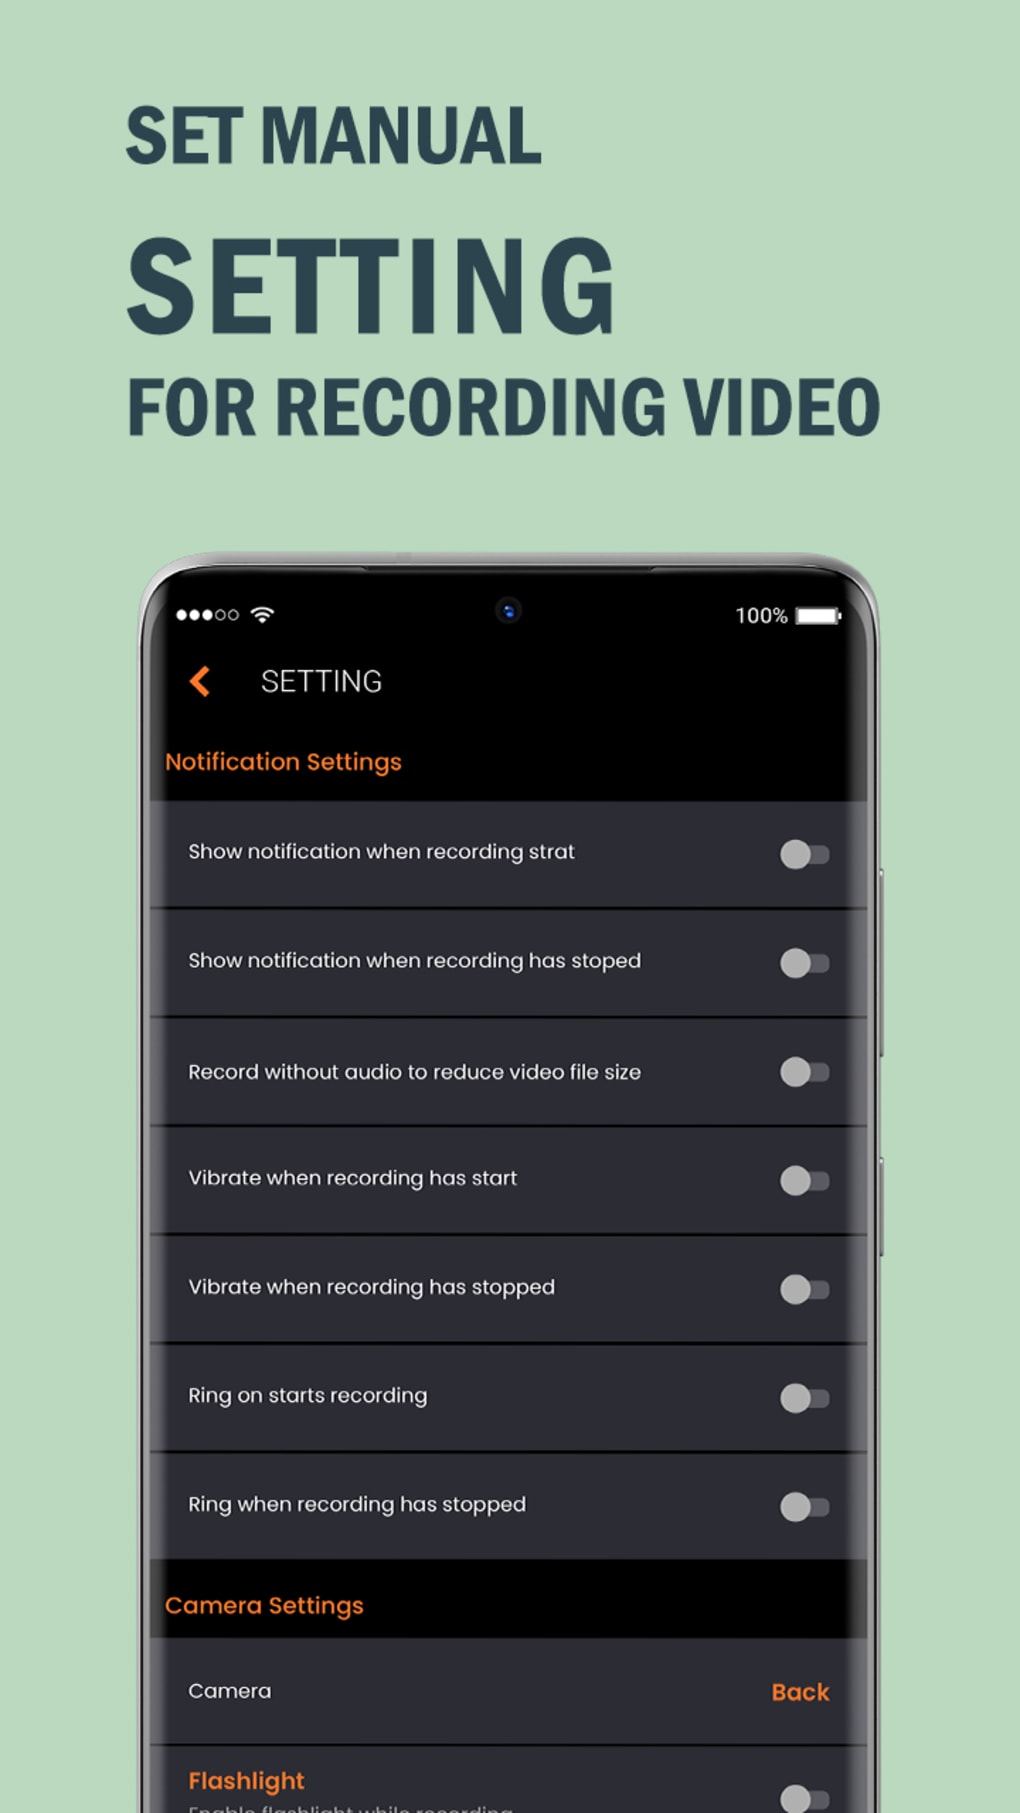 Secret Video Recorder APK là ứng dụng hoàn hảo cho những ai muốn quay video một cách bí mật. Với chức năng ghi âm ẩn danh và khả năng thay đổi biểu tượng ứng dụng, ứng dụng này sẽ giúp bạn thu thập các thông tin một cách hiệu quả.